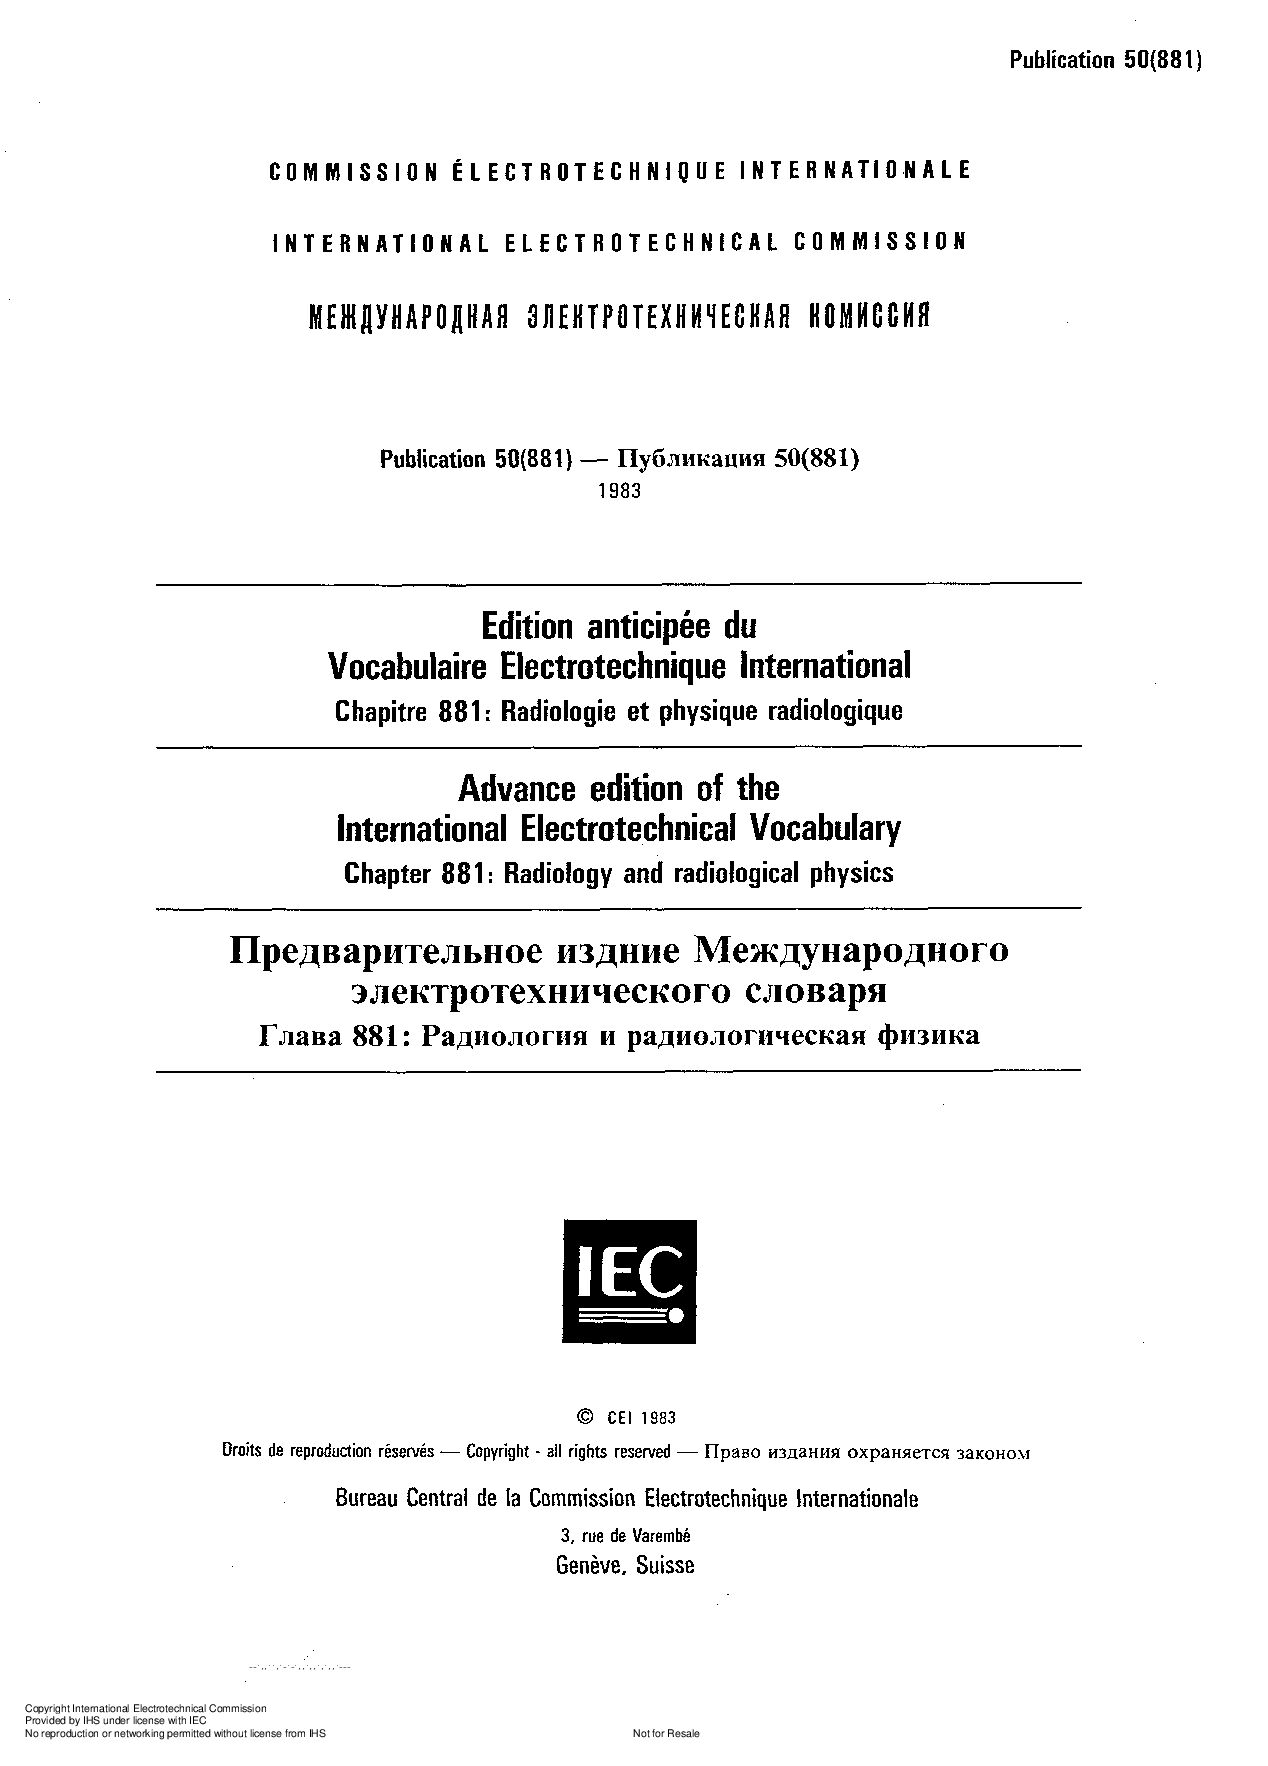 IEC 60050-881:1983封面图